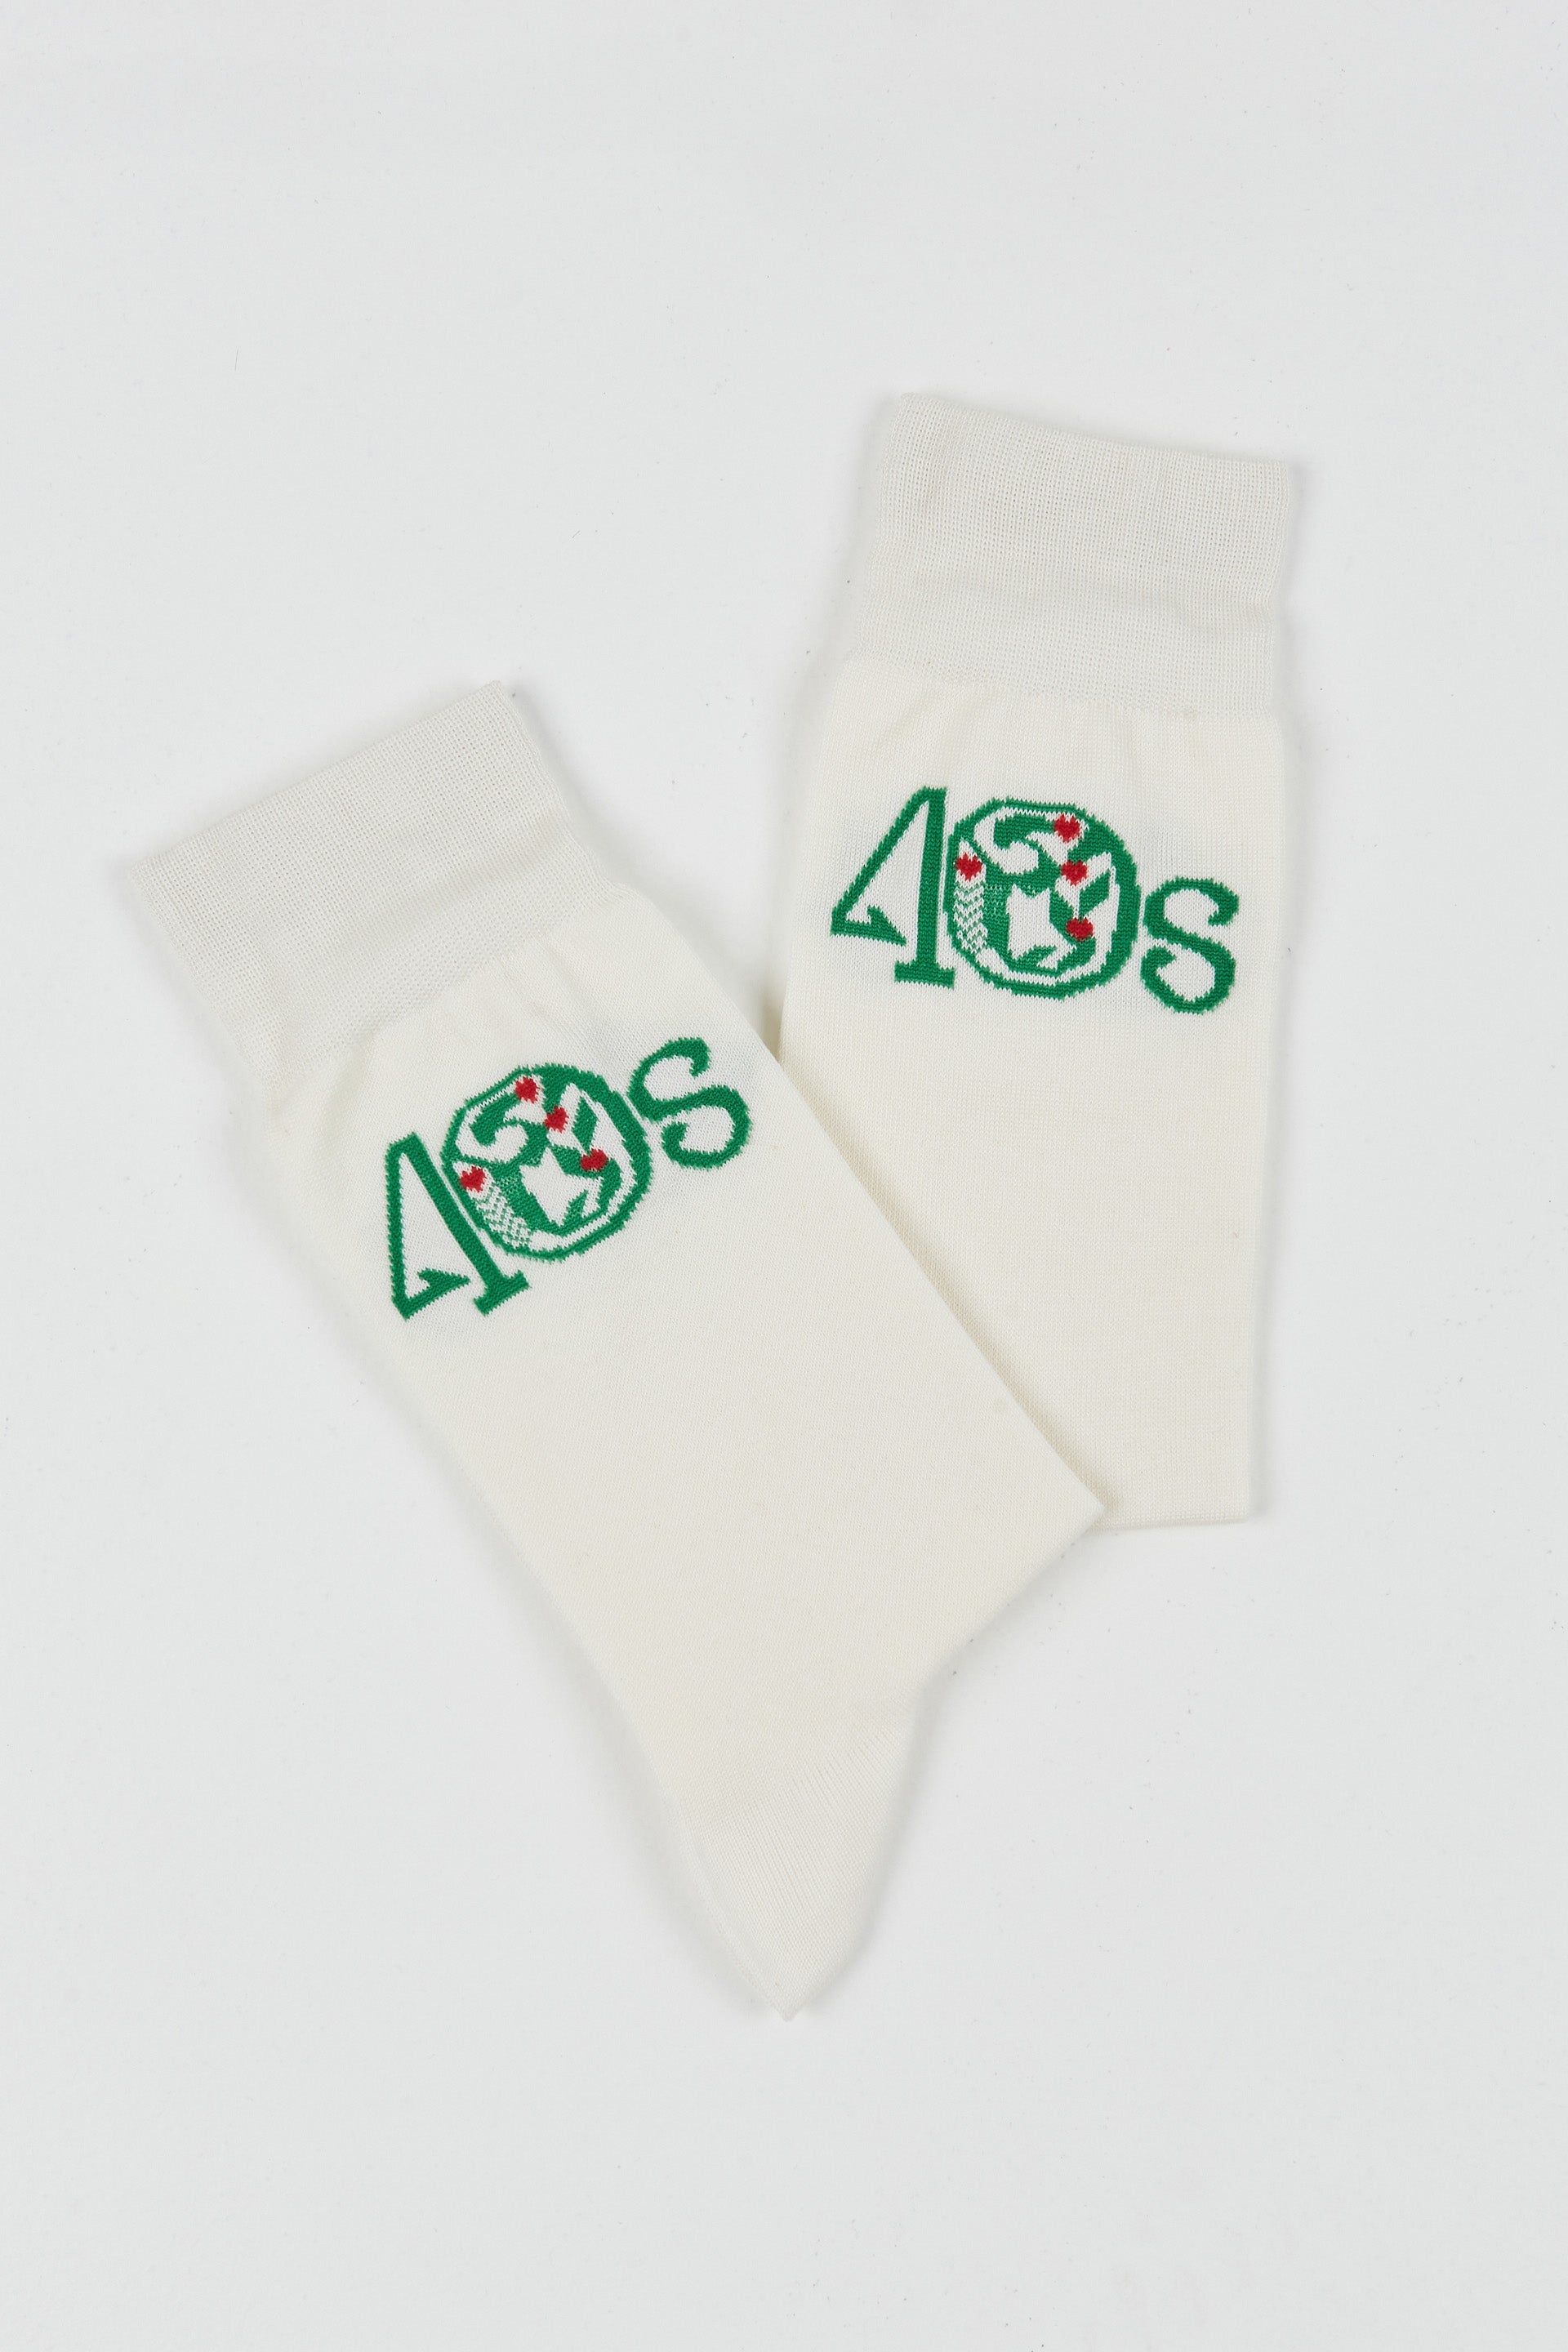 40s Socks Off White